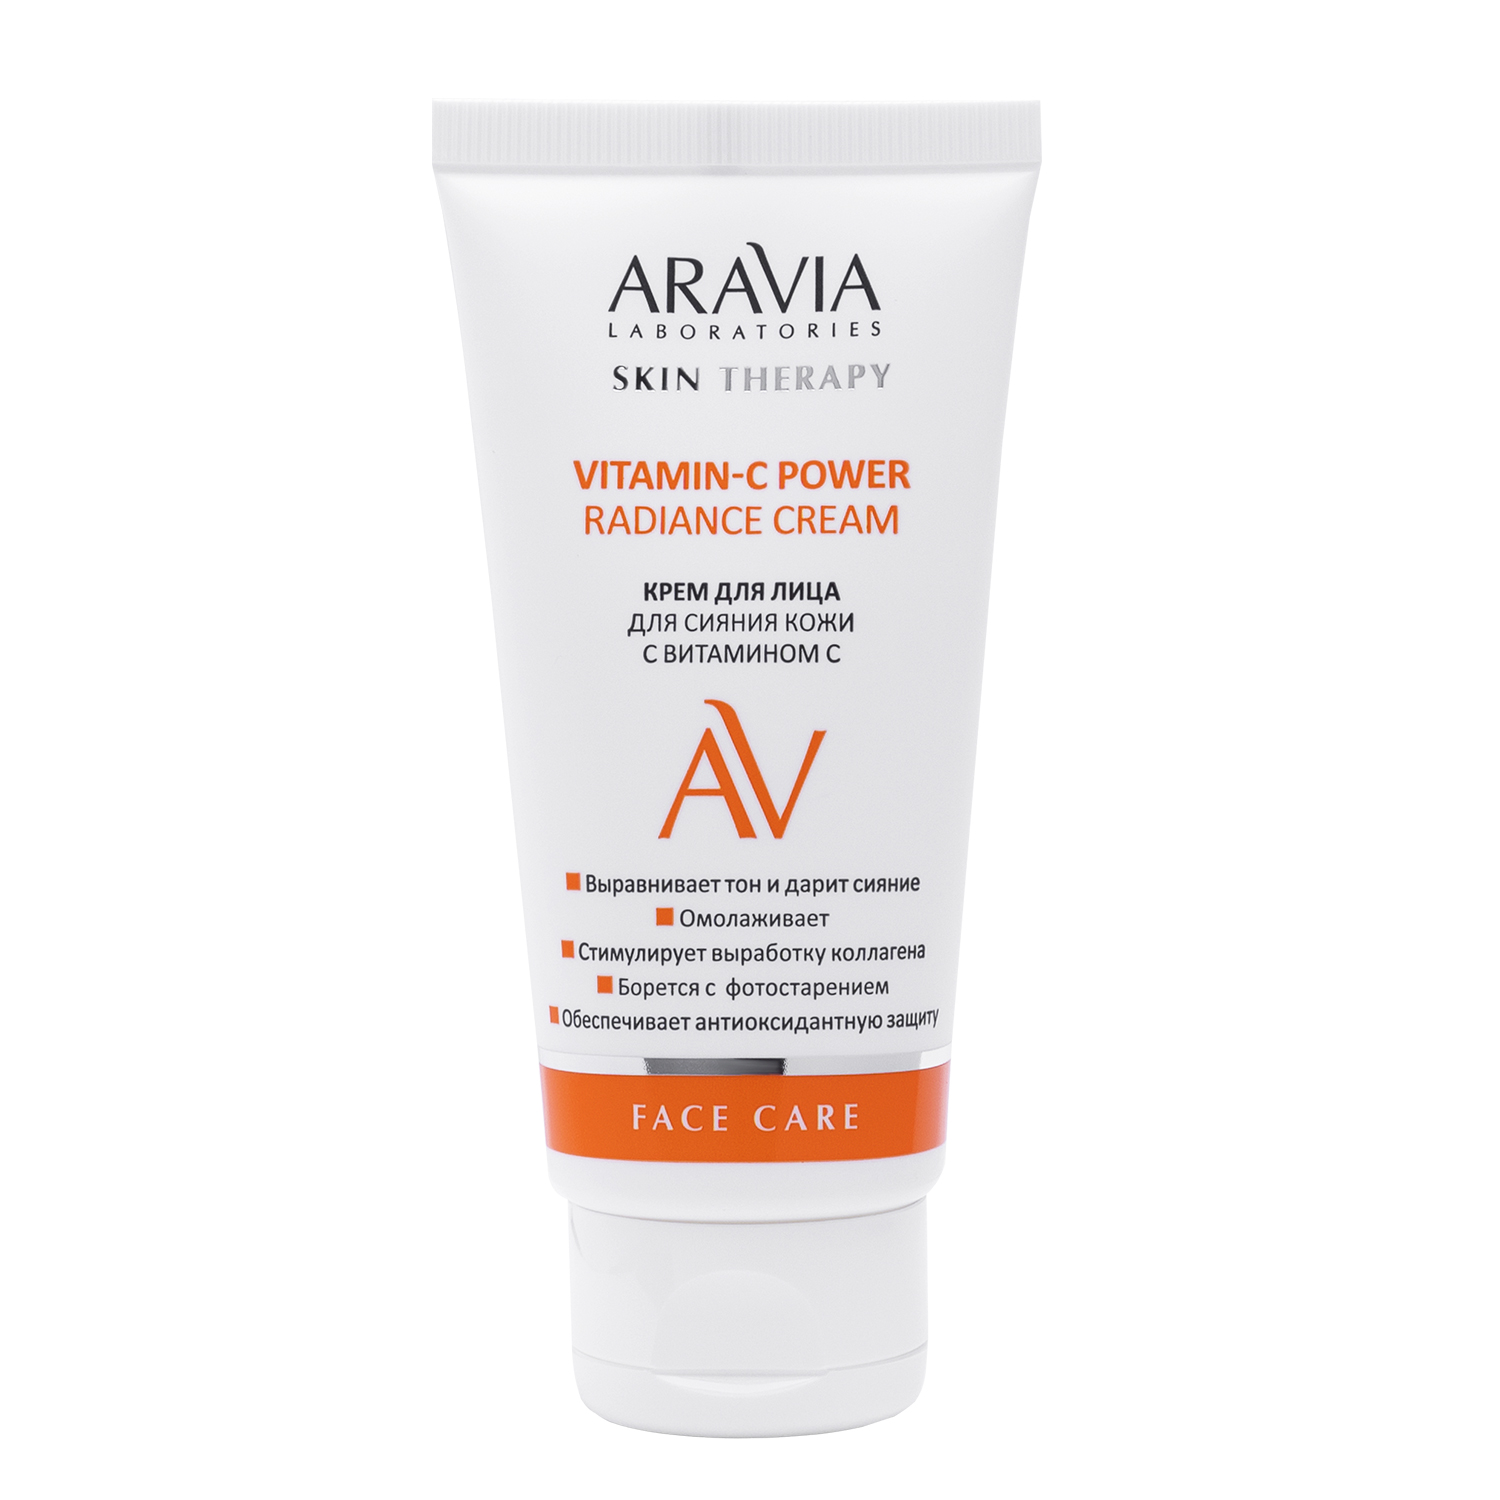 Крем Aravia Laboratories для лица сияние кожи 50 мл крем масло для лица интенсивное восстановление кожи 48 мл